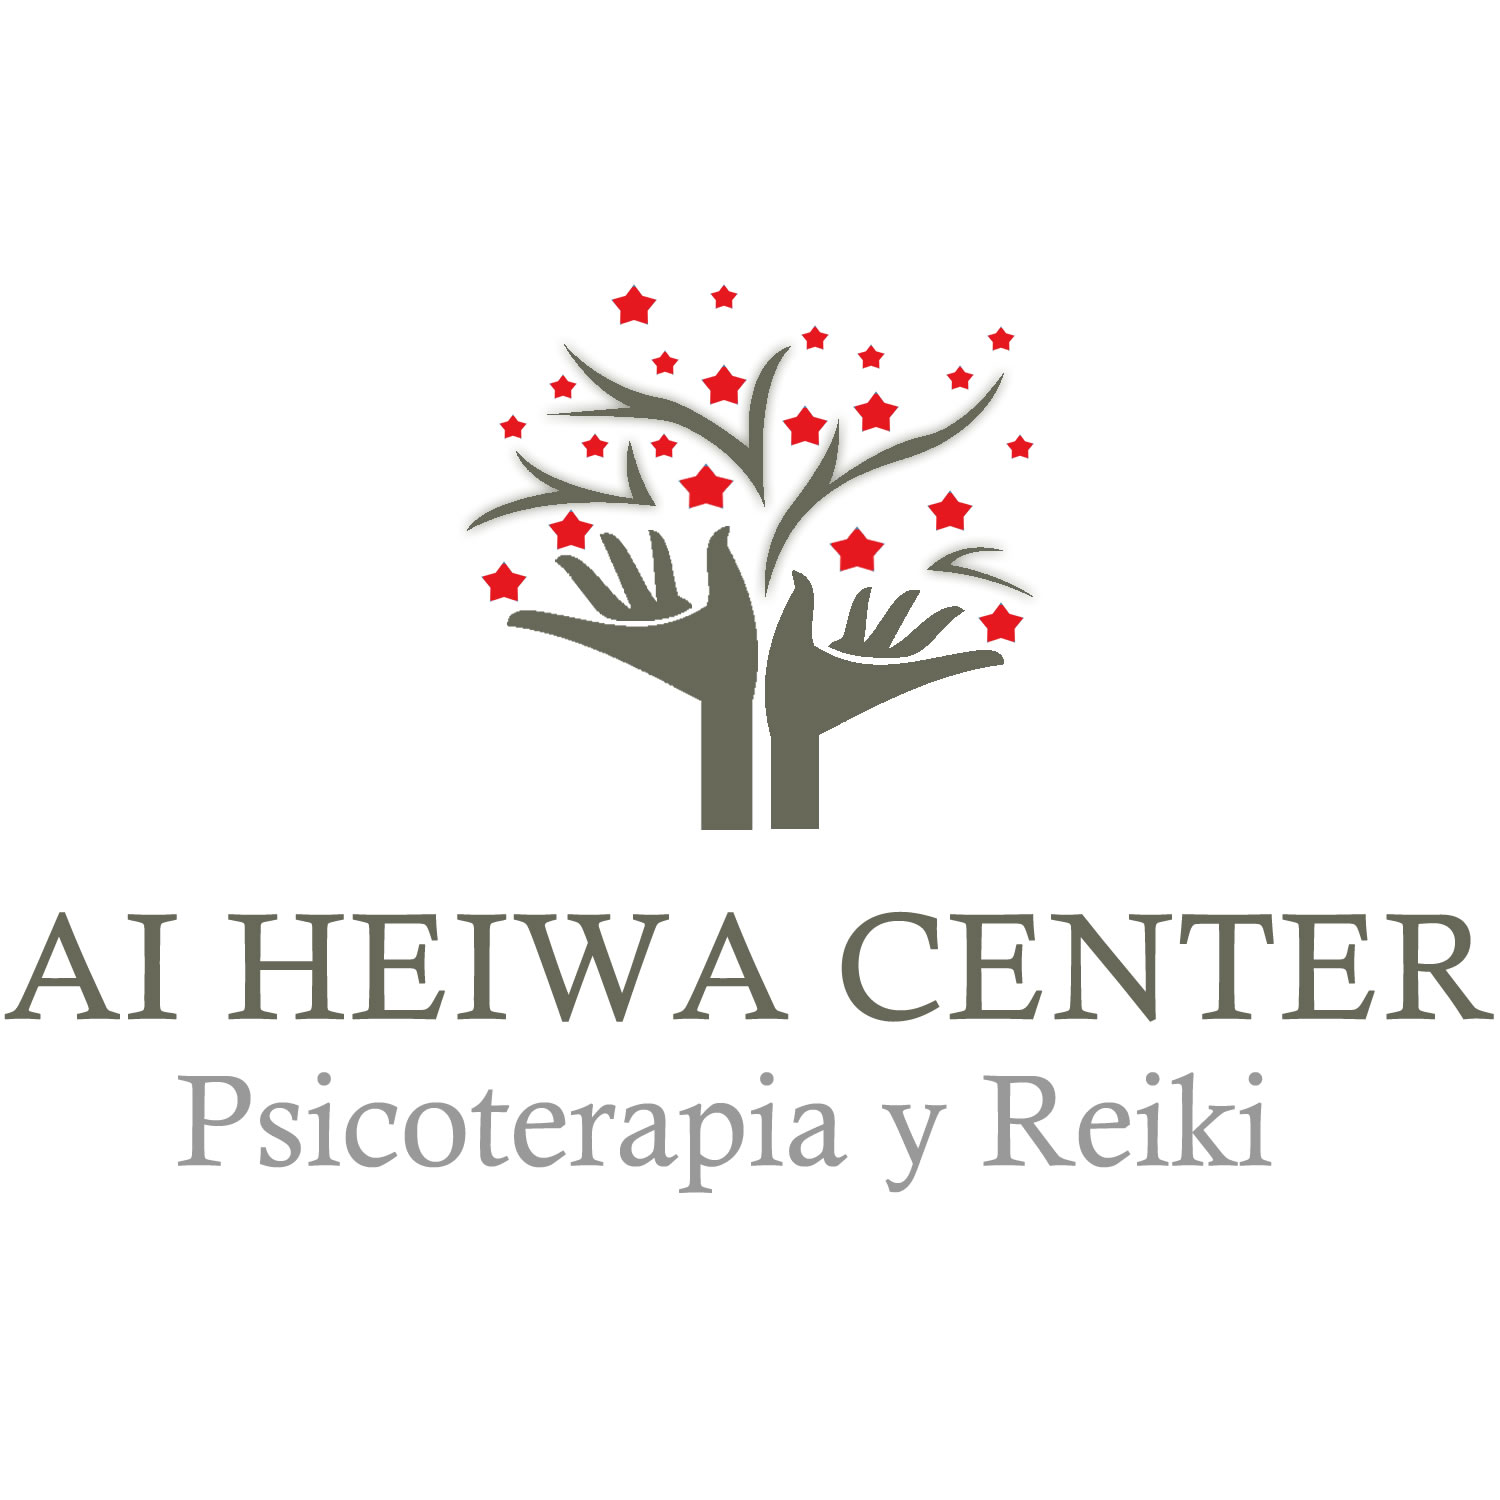 Ai Heiwa Center